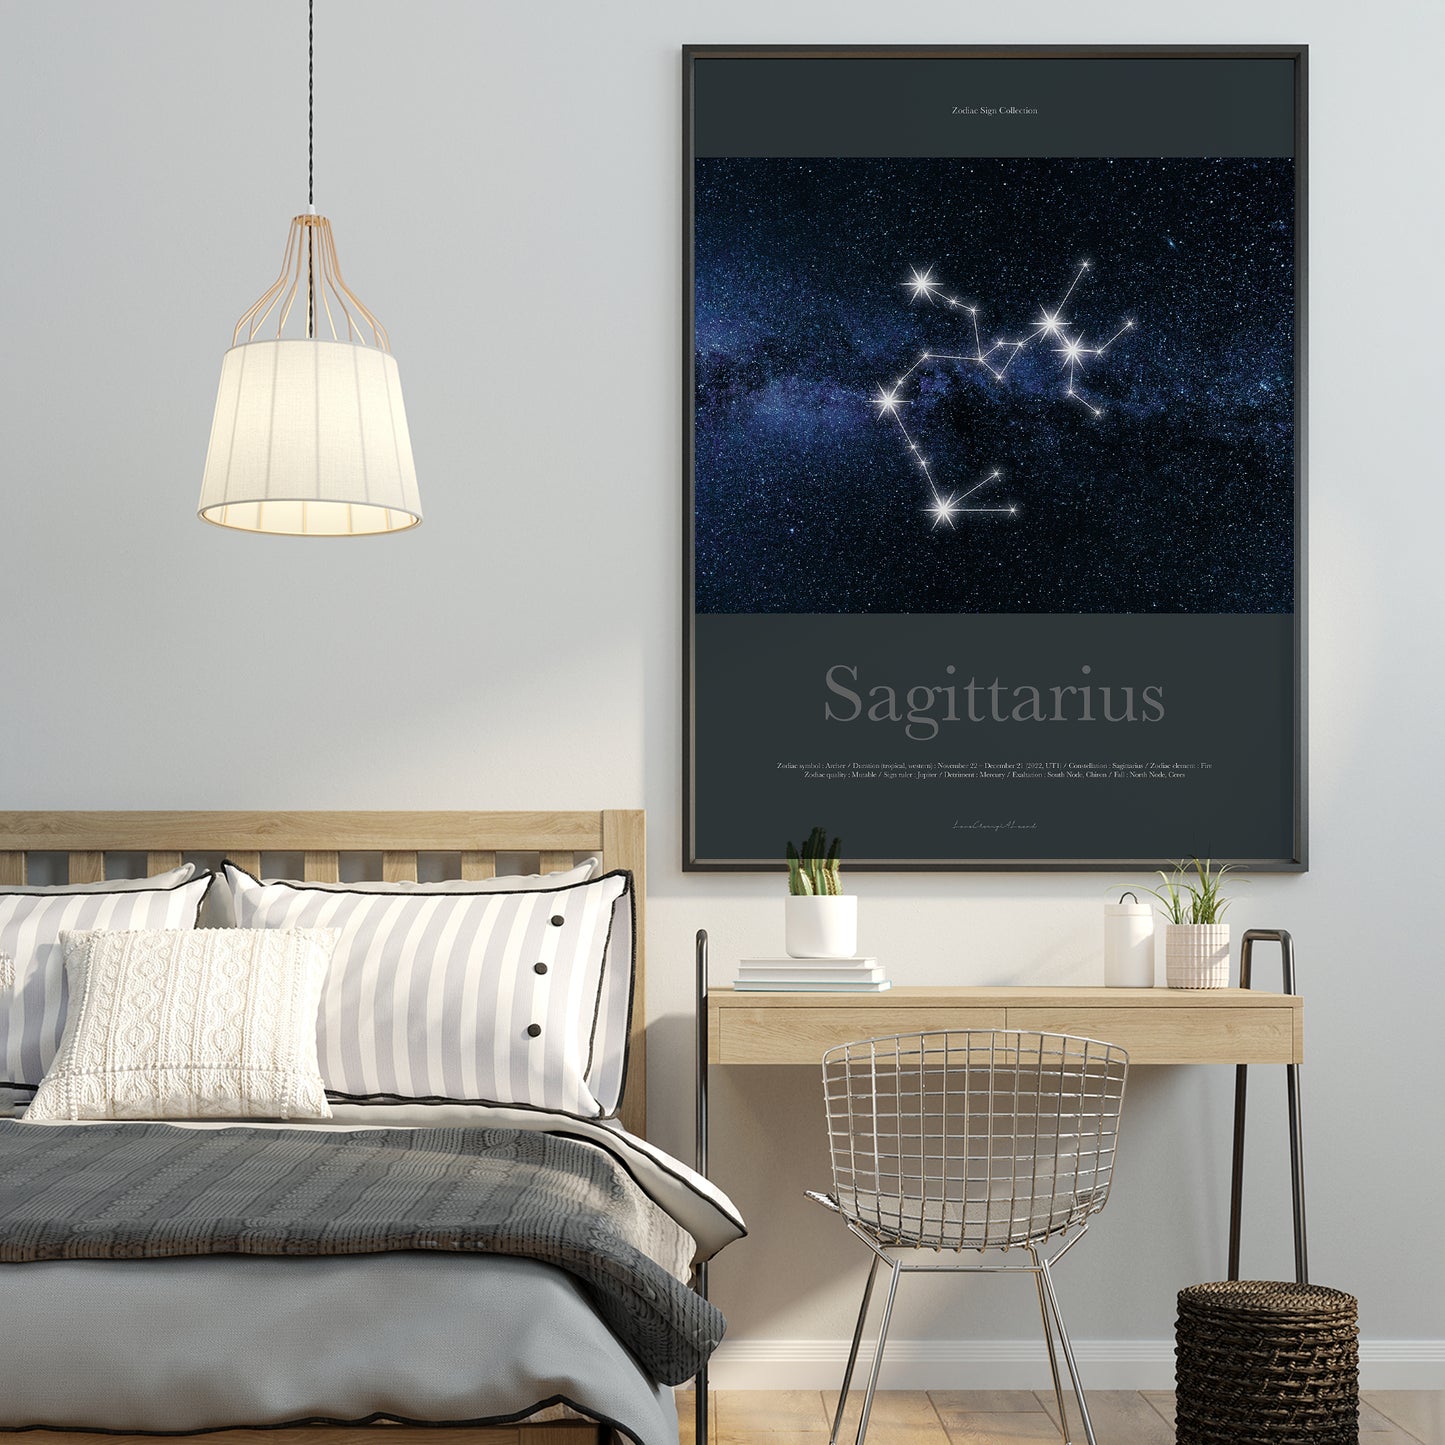 Zodiac Sign Collection "Sagittarius"